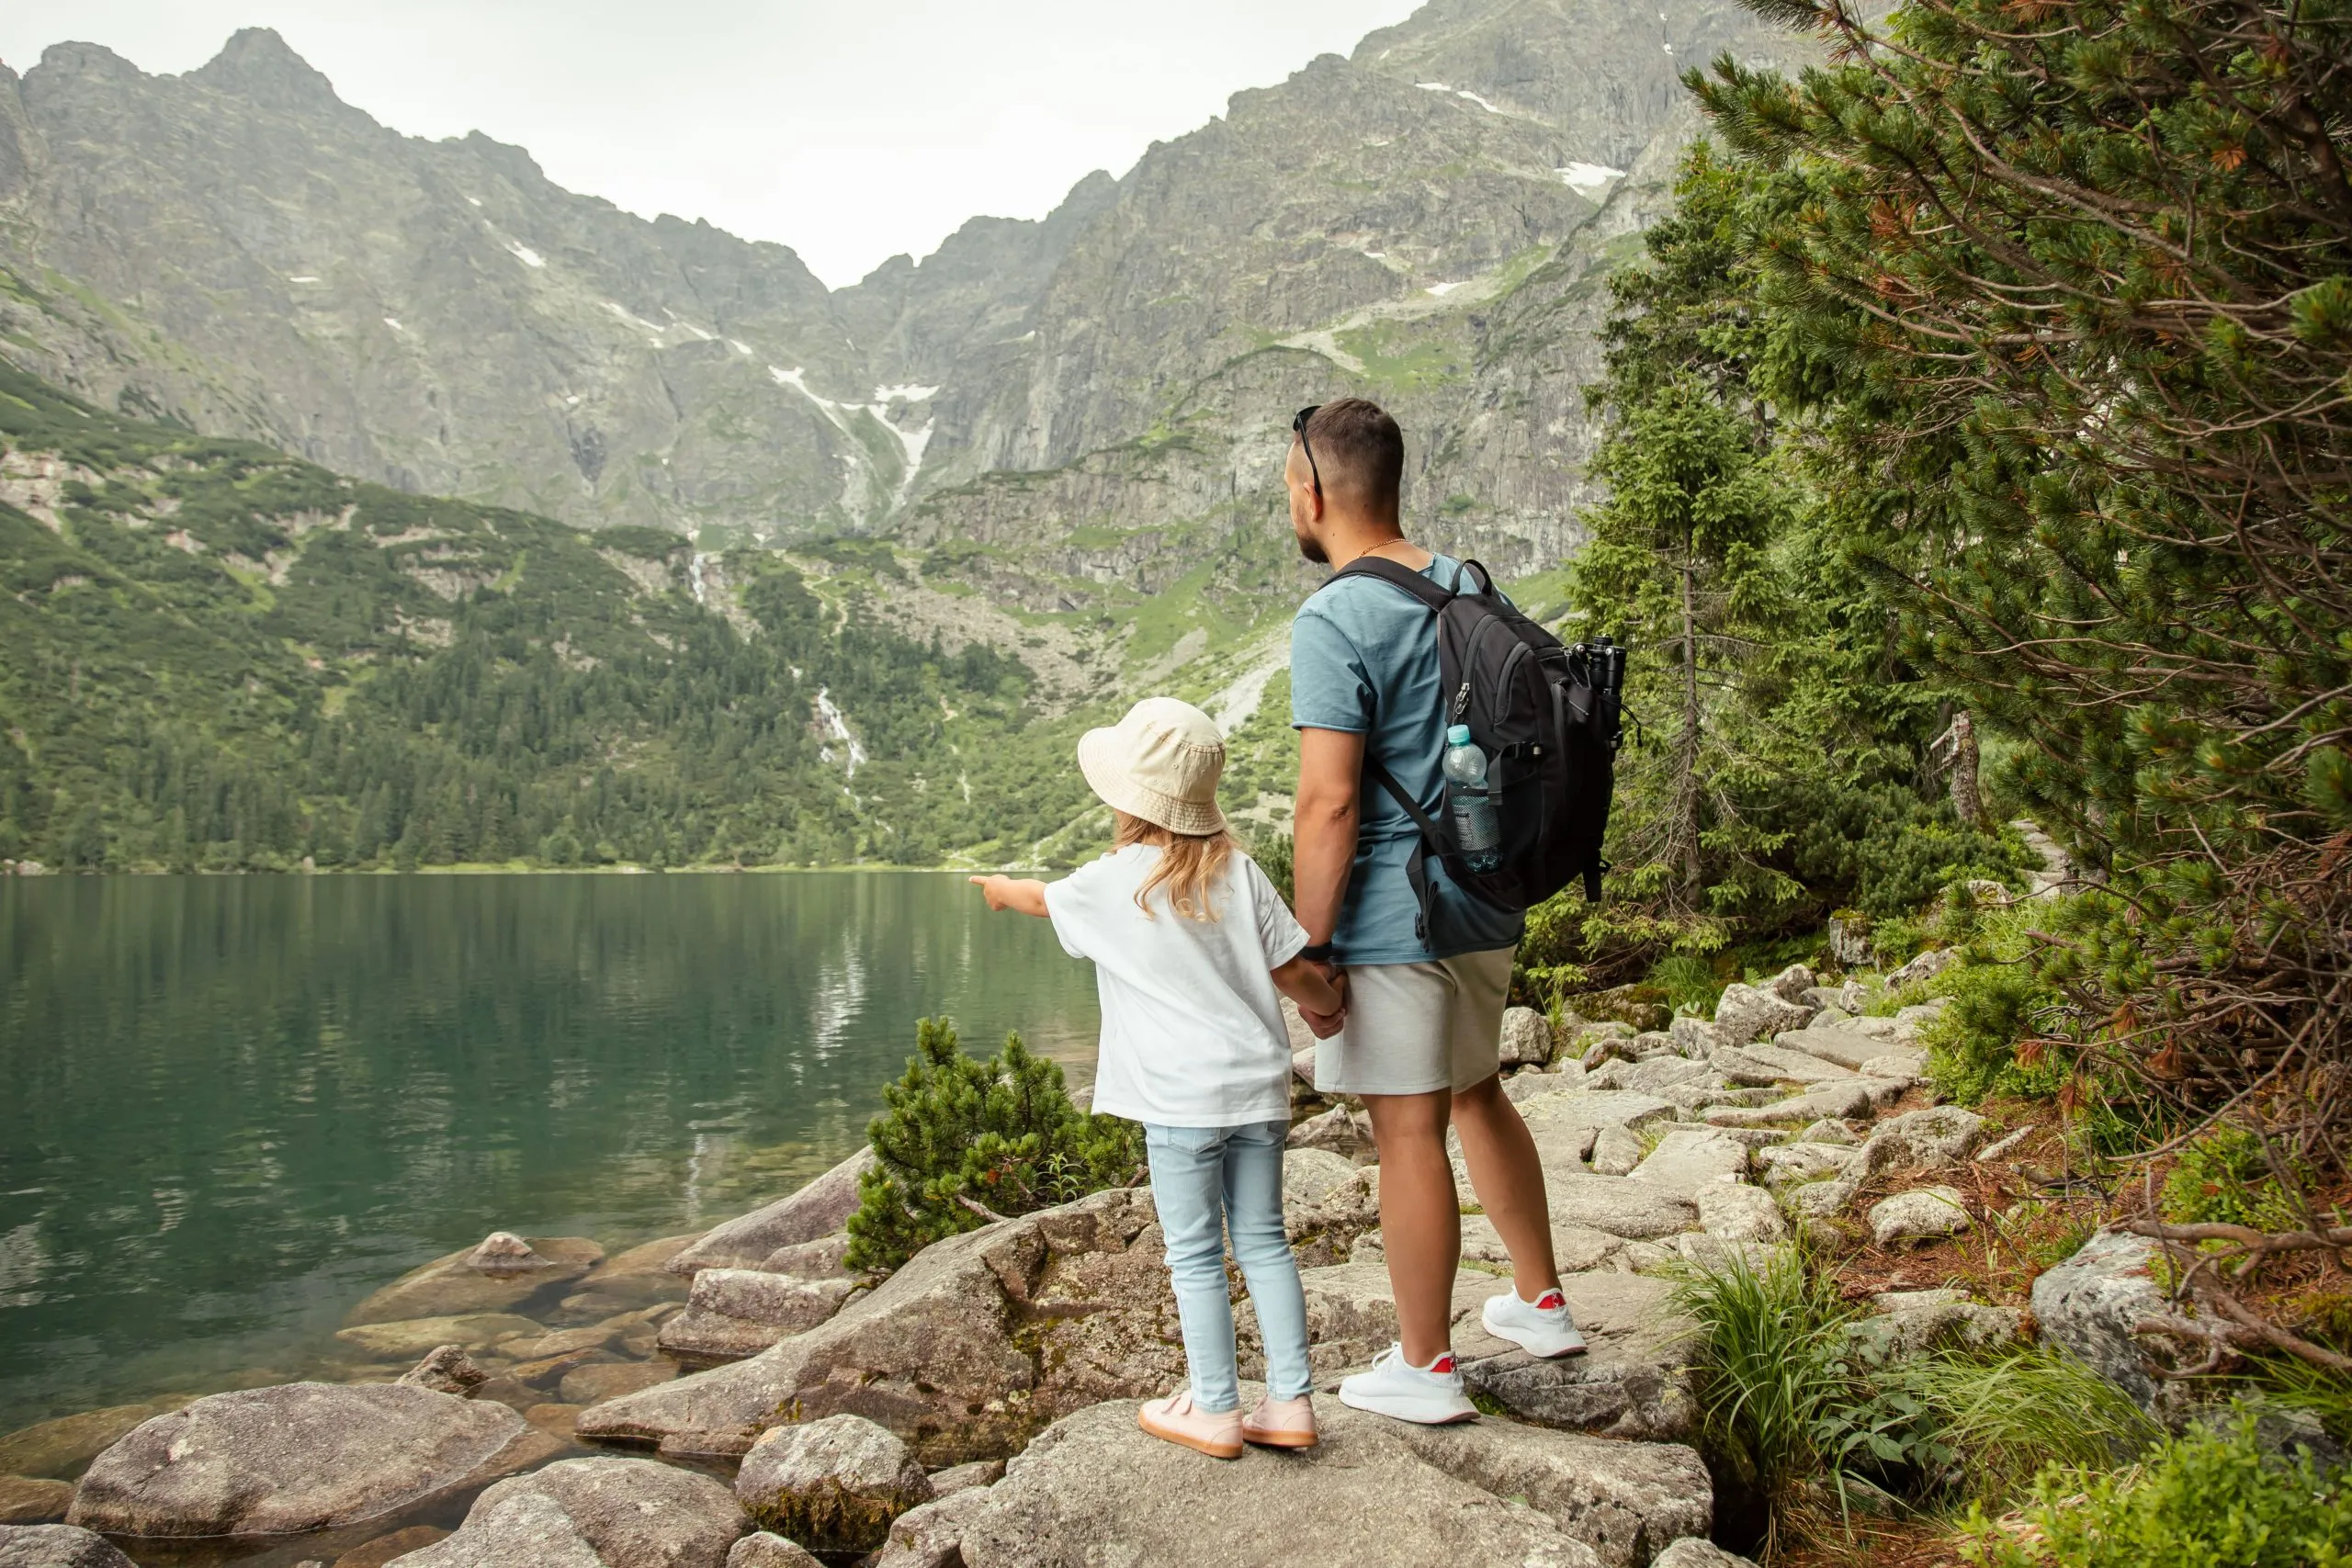 Mann und Kind Touristen in den Bergen bei Morskie Oko See in der Nähe von Zakopane, Tatra-Gebirge, Polen. Familienreise-Konzept.